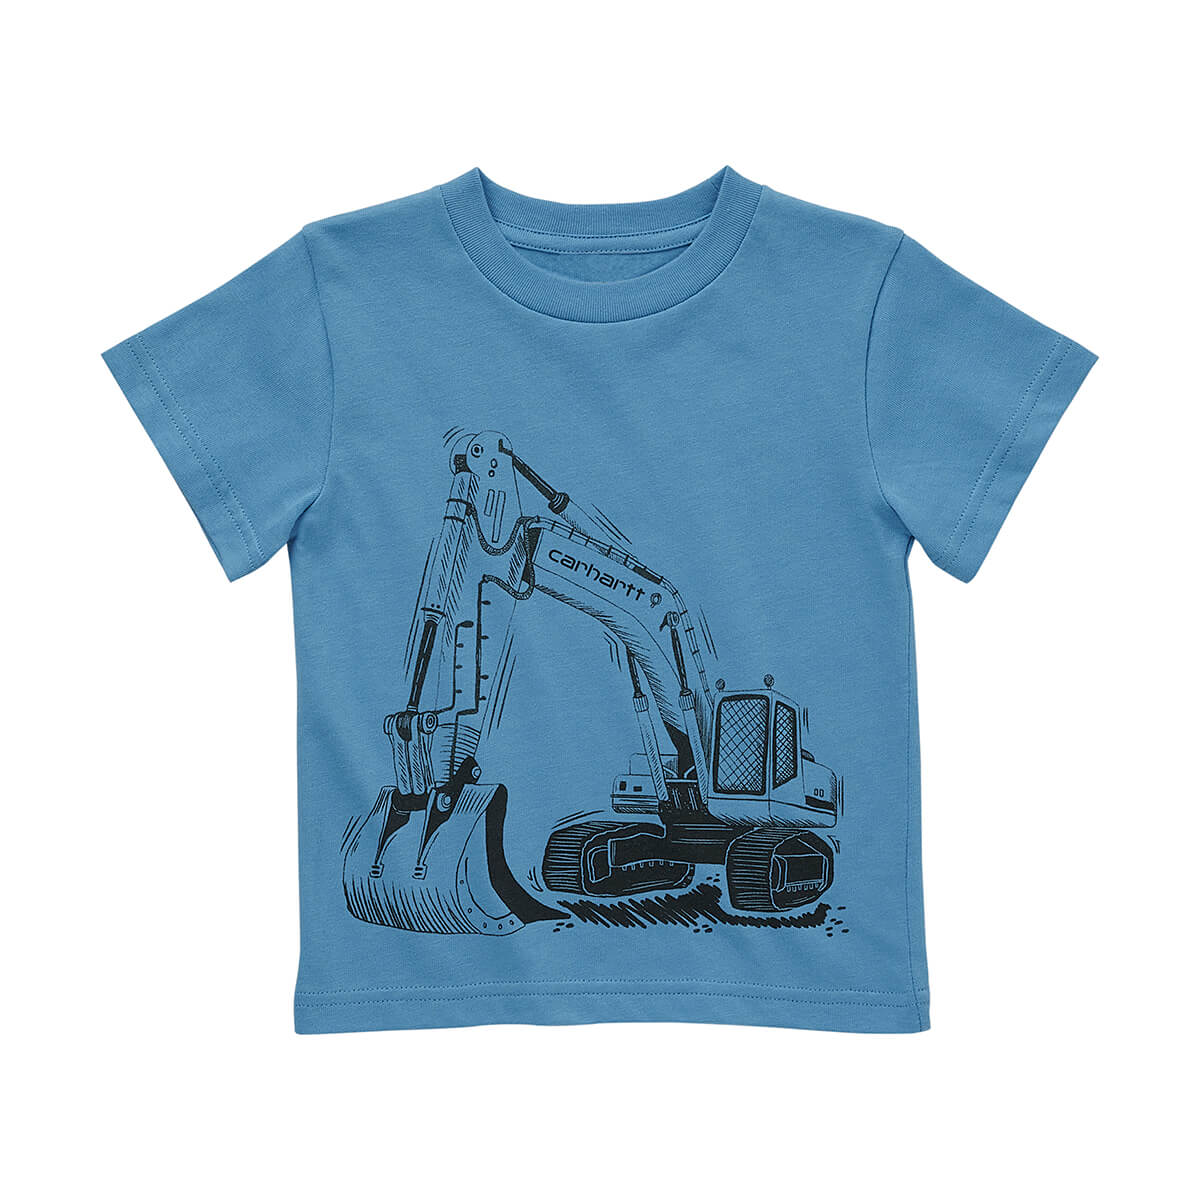 Carhartt Short-Sleeve Construction T-Shirt - Blue